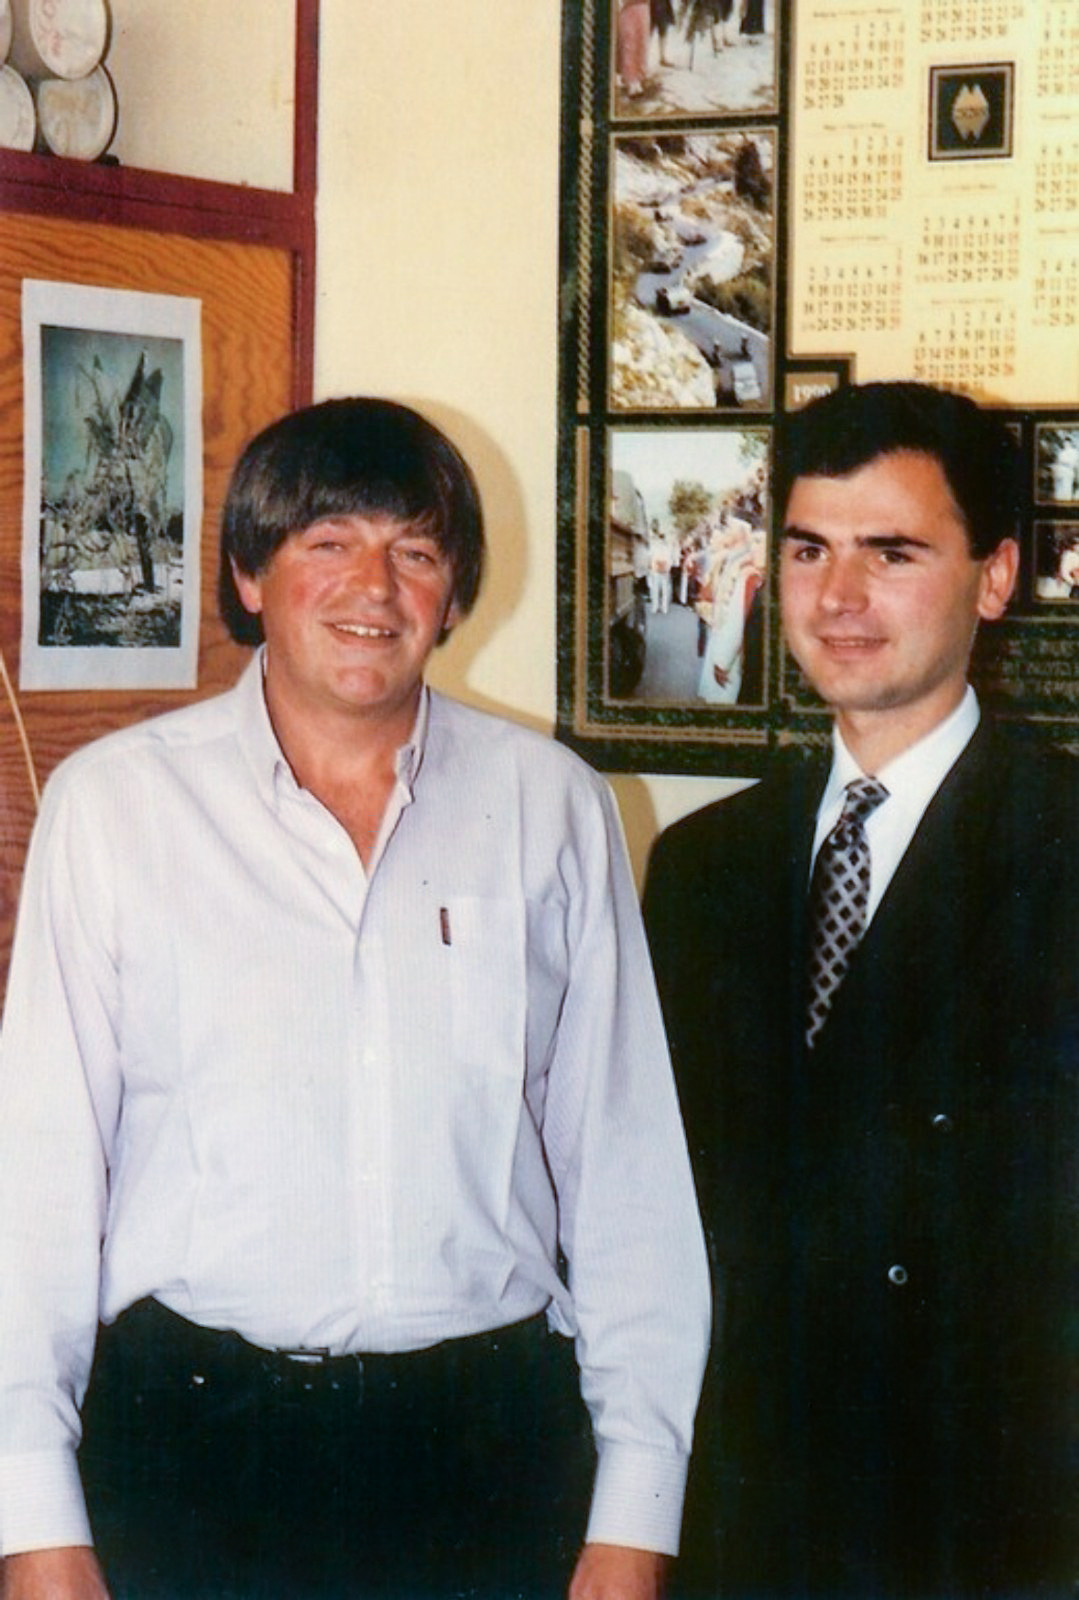 Prince Nicholas Petrovic Njegos of Montenegro and Dejan Stojanovic